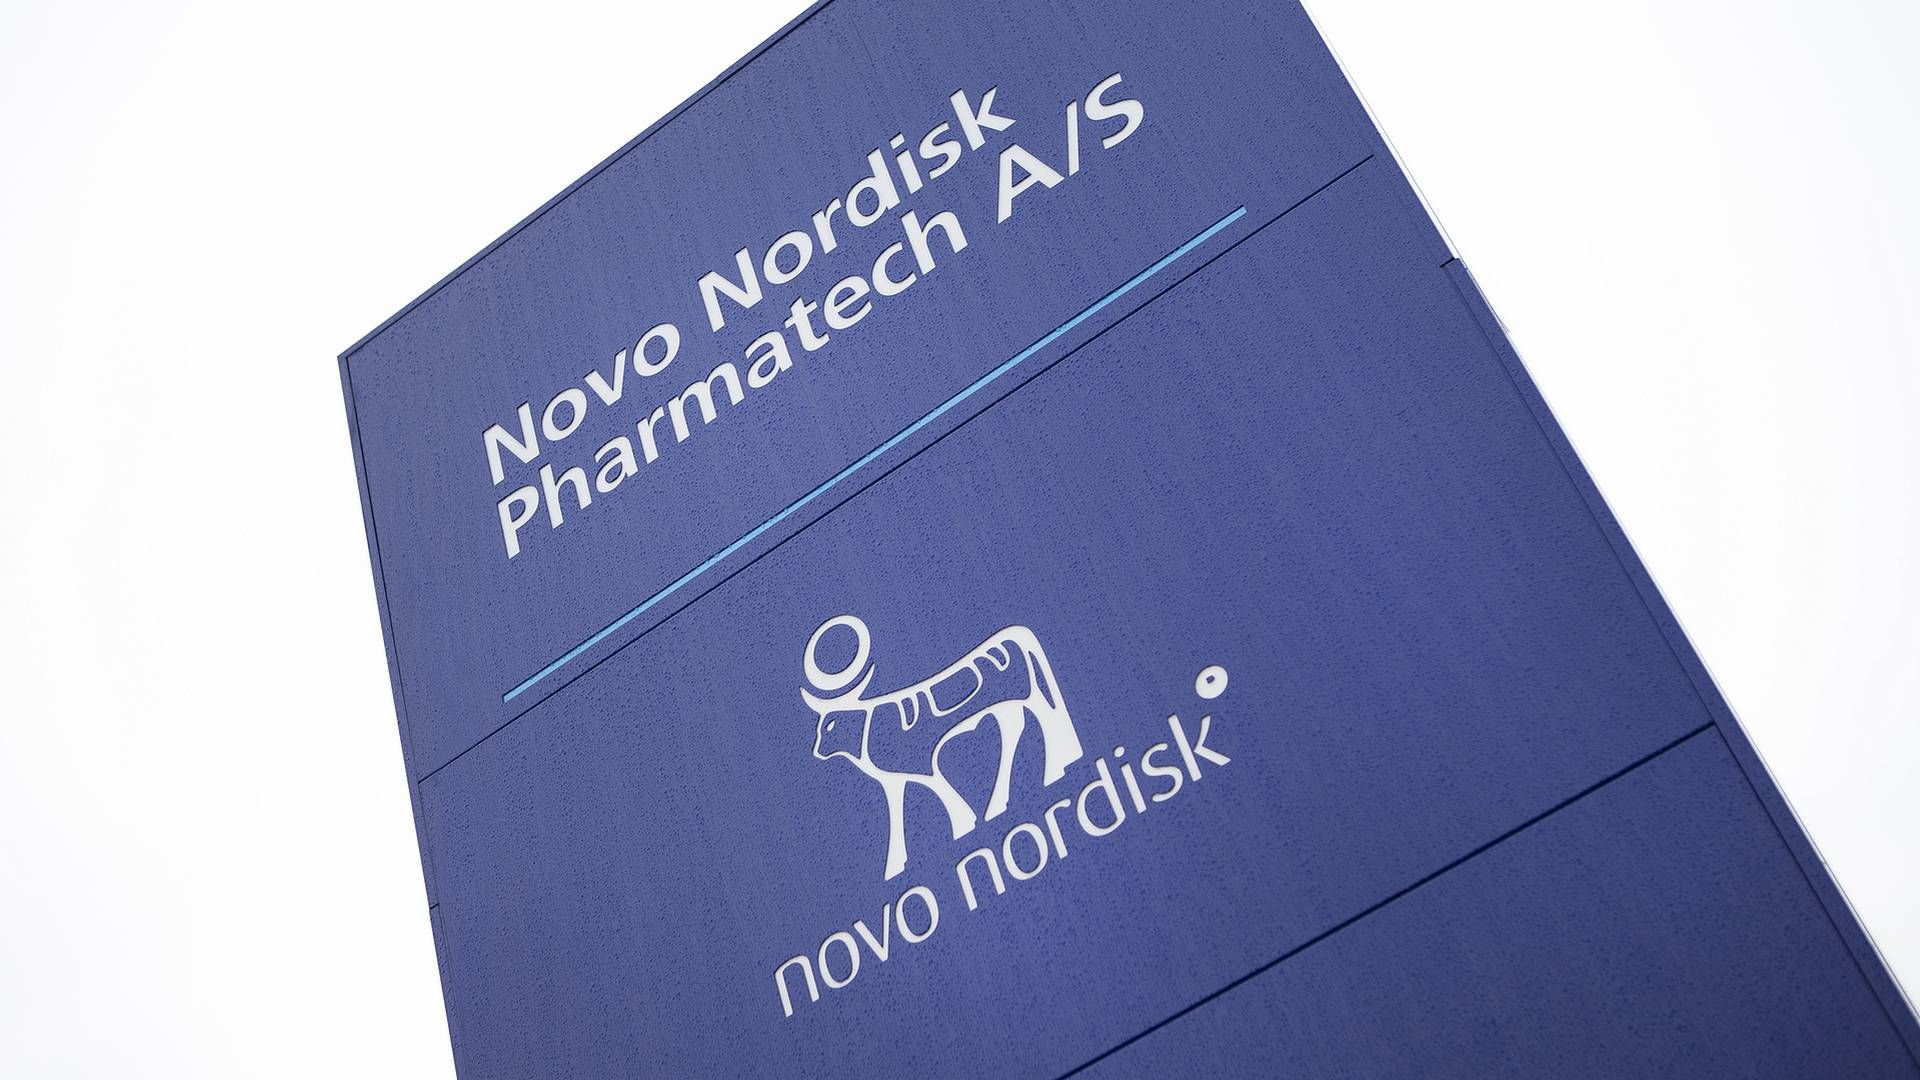 Foto: Novo Nordisk Pharmatech/PR